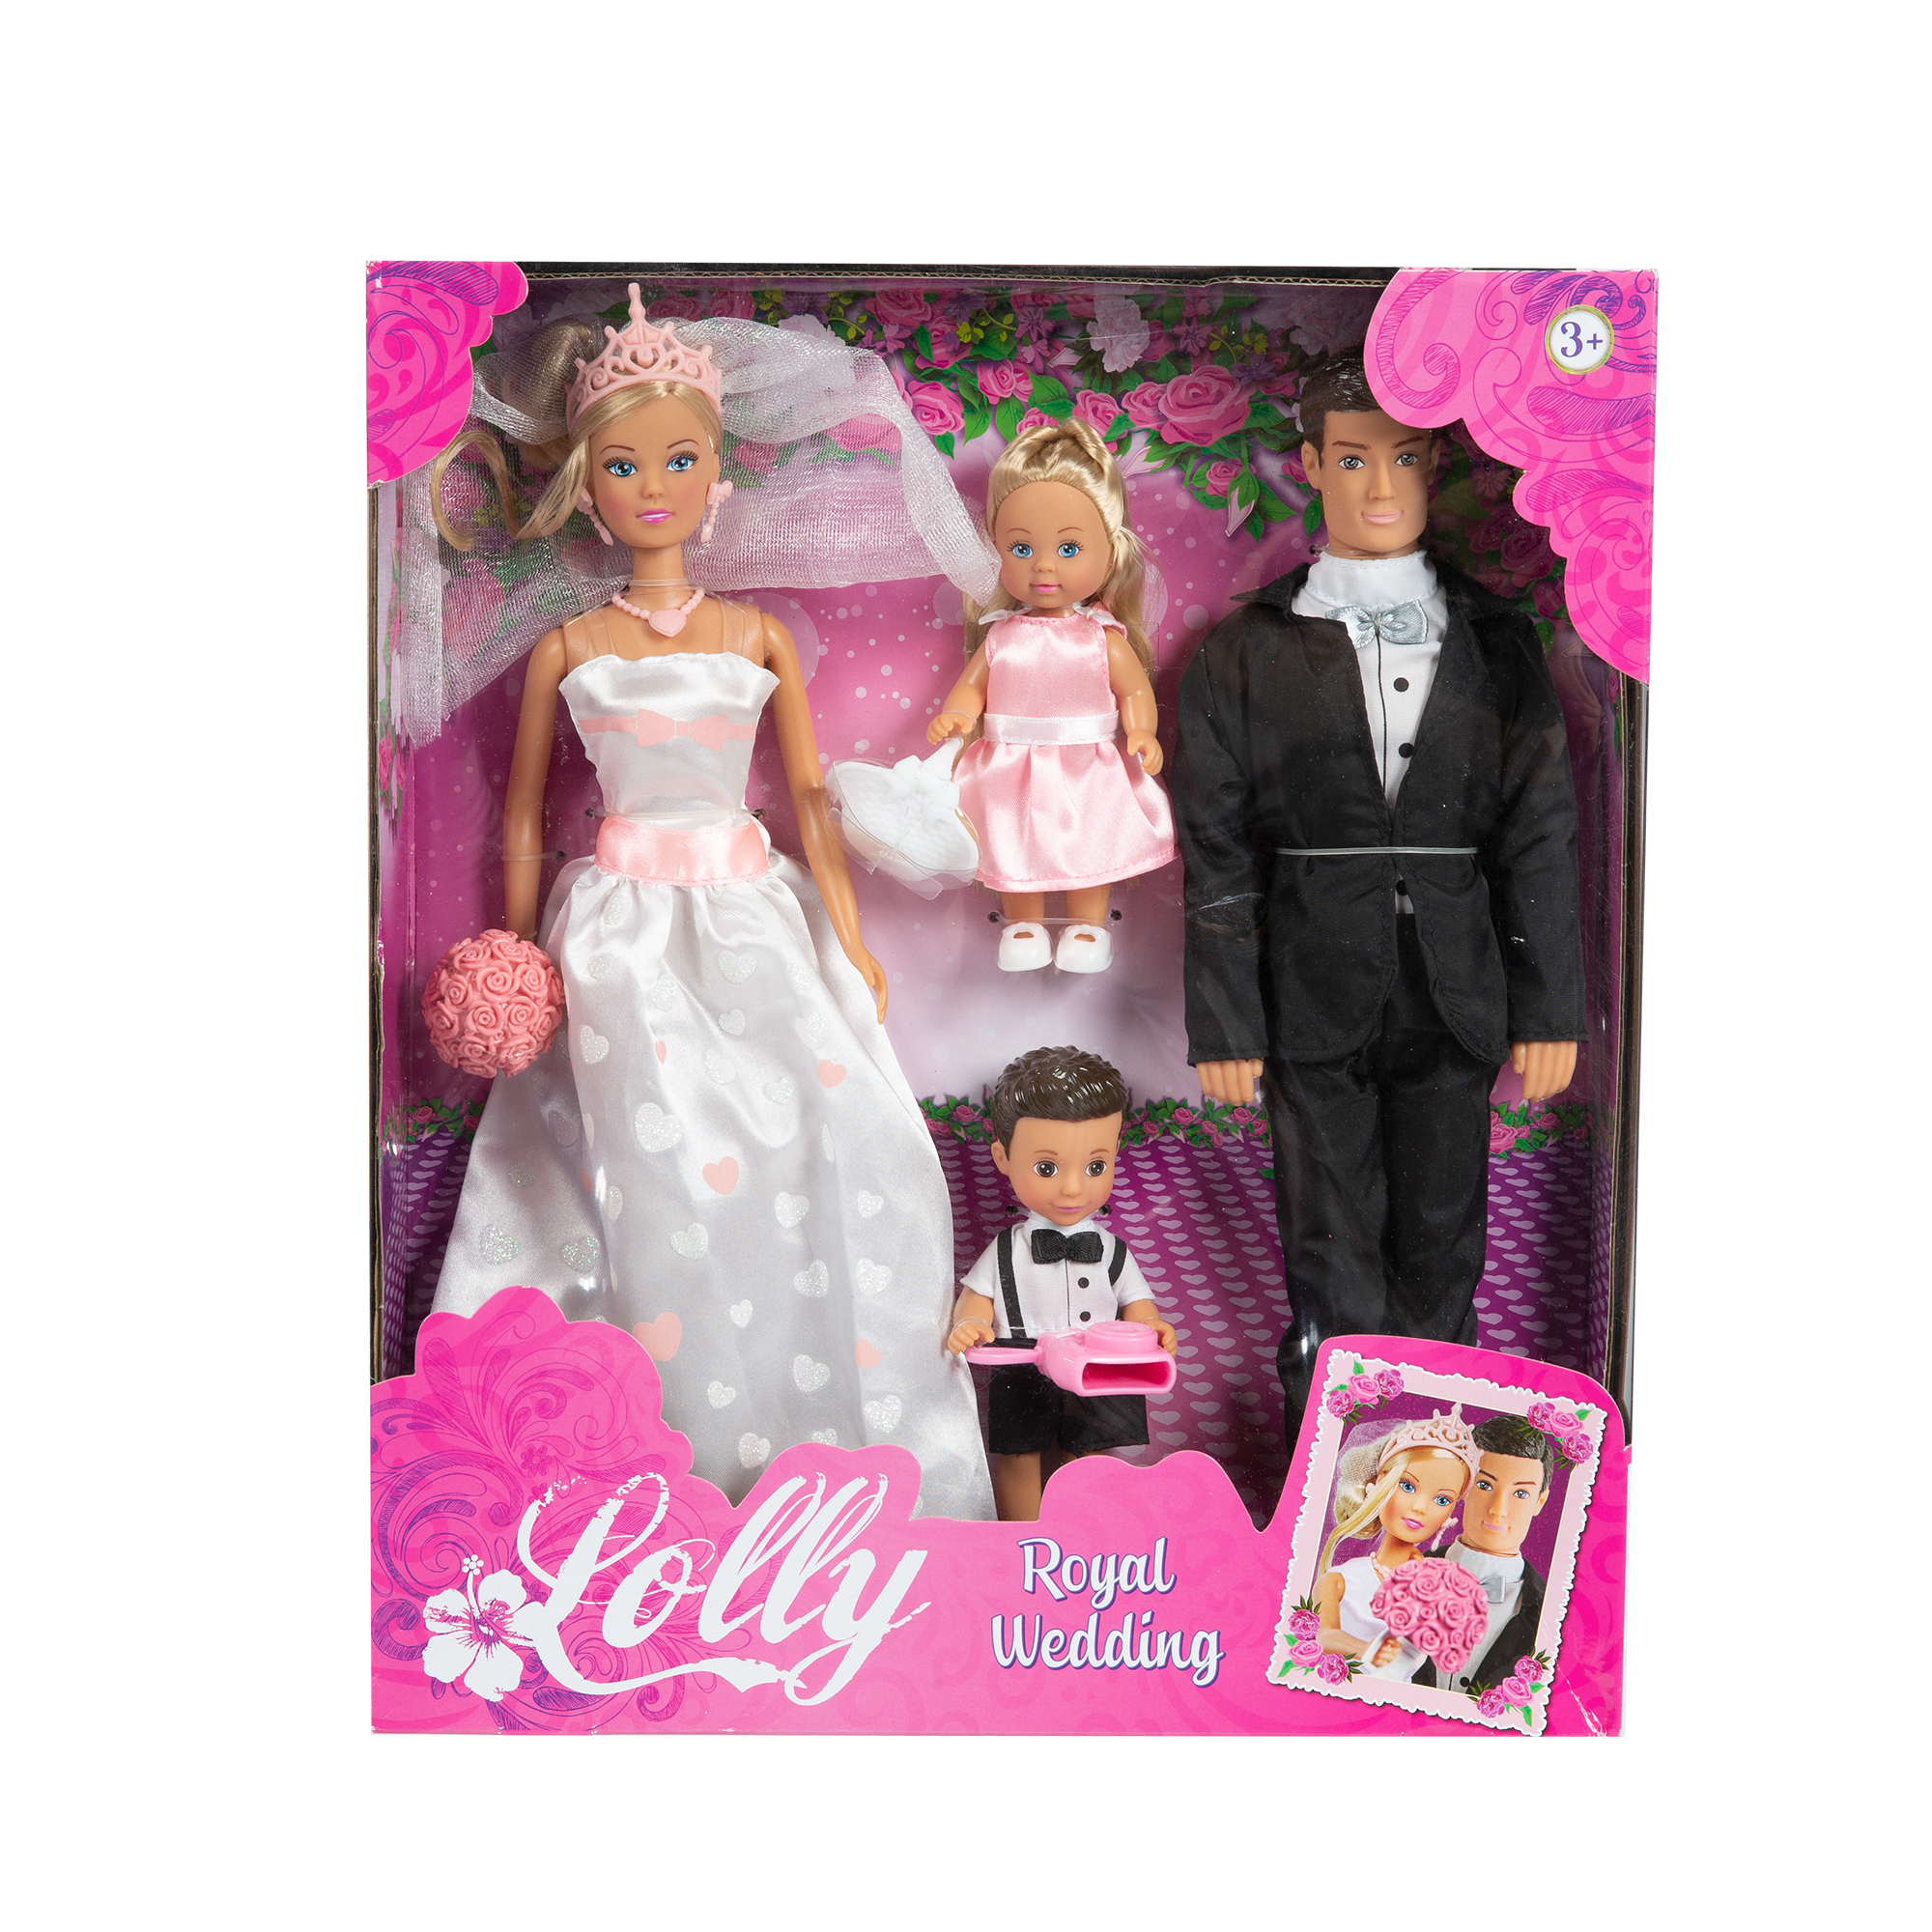 Lolly royal wedding - LOLLY